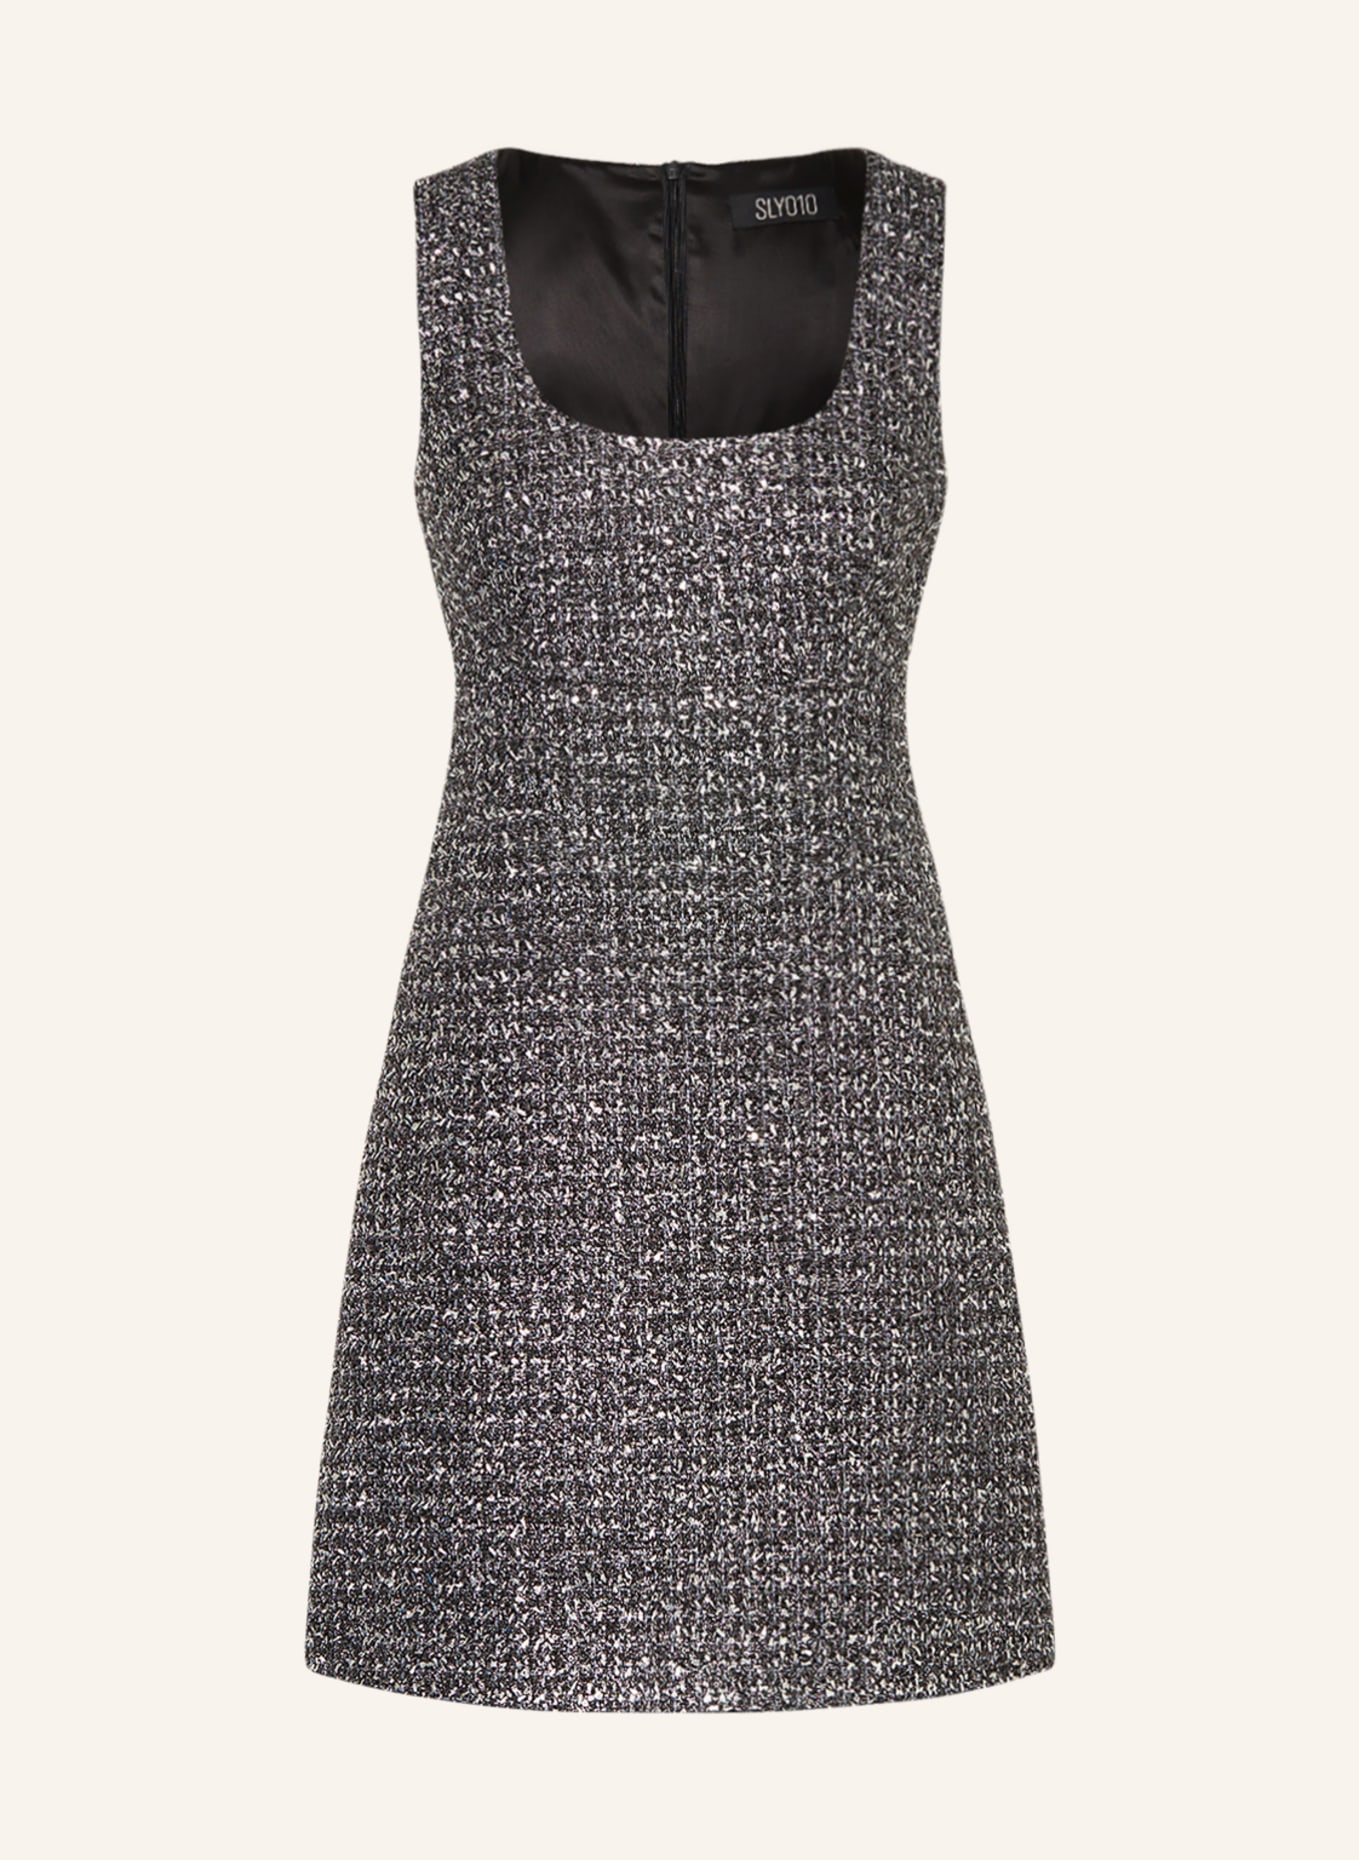 SLY 010 Tweed-Kleid BRIAR, Farbe: SCHWARZ/ SILBER (Bild 1)